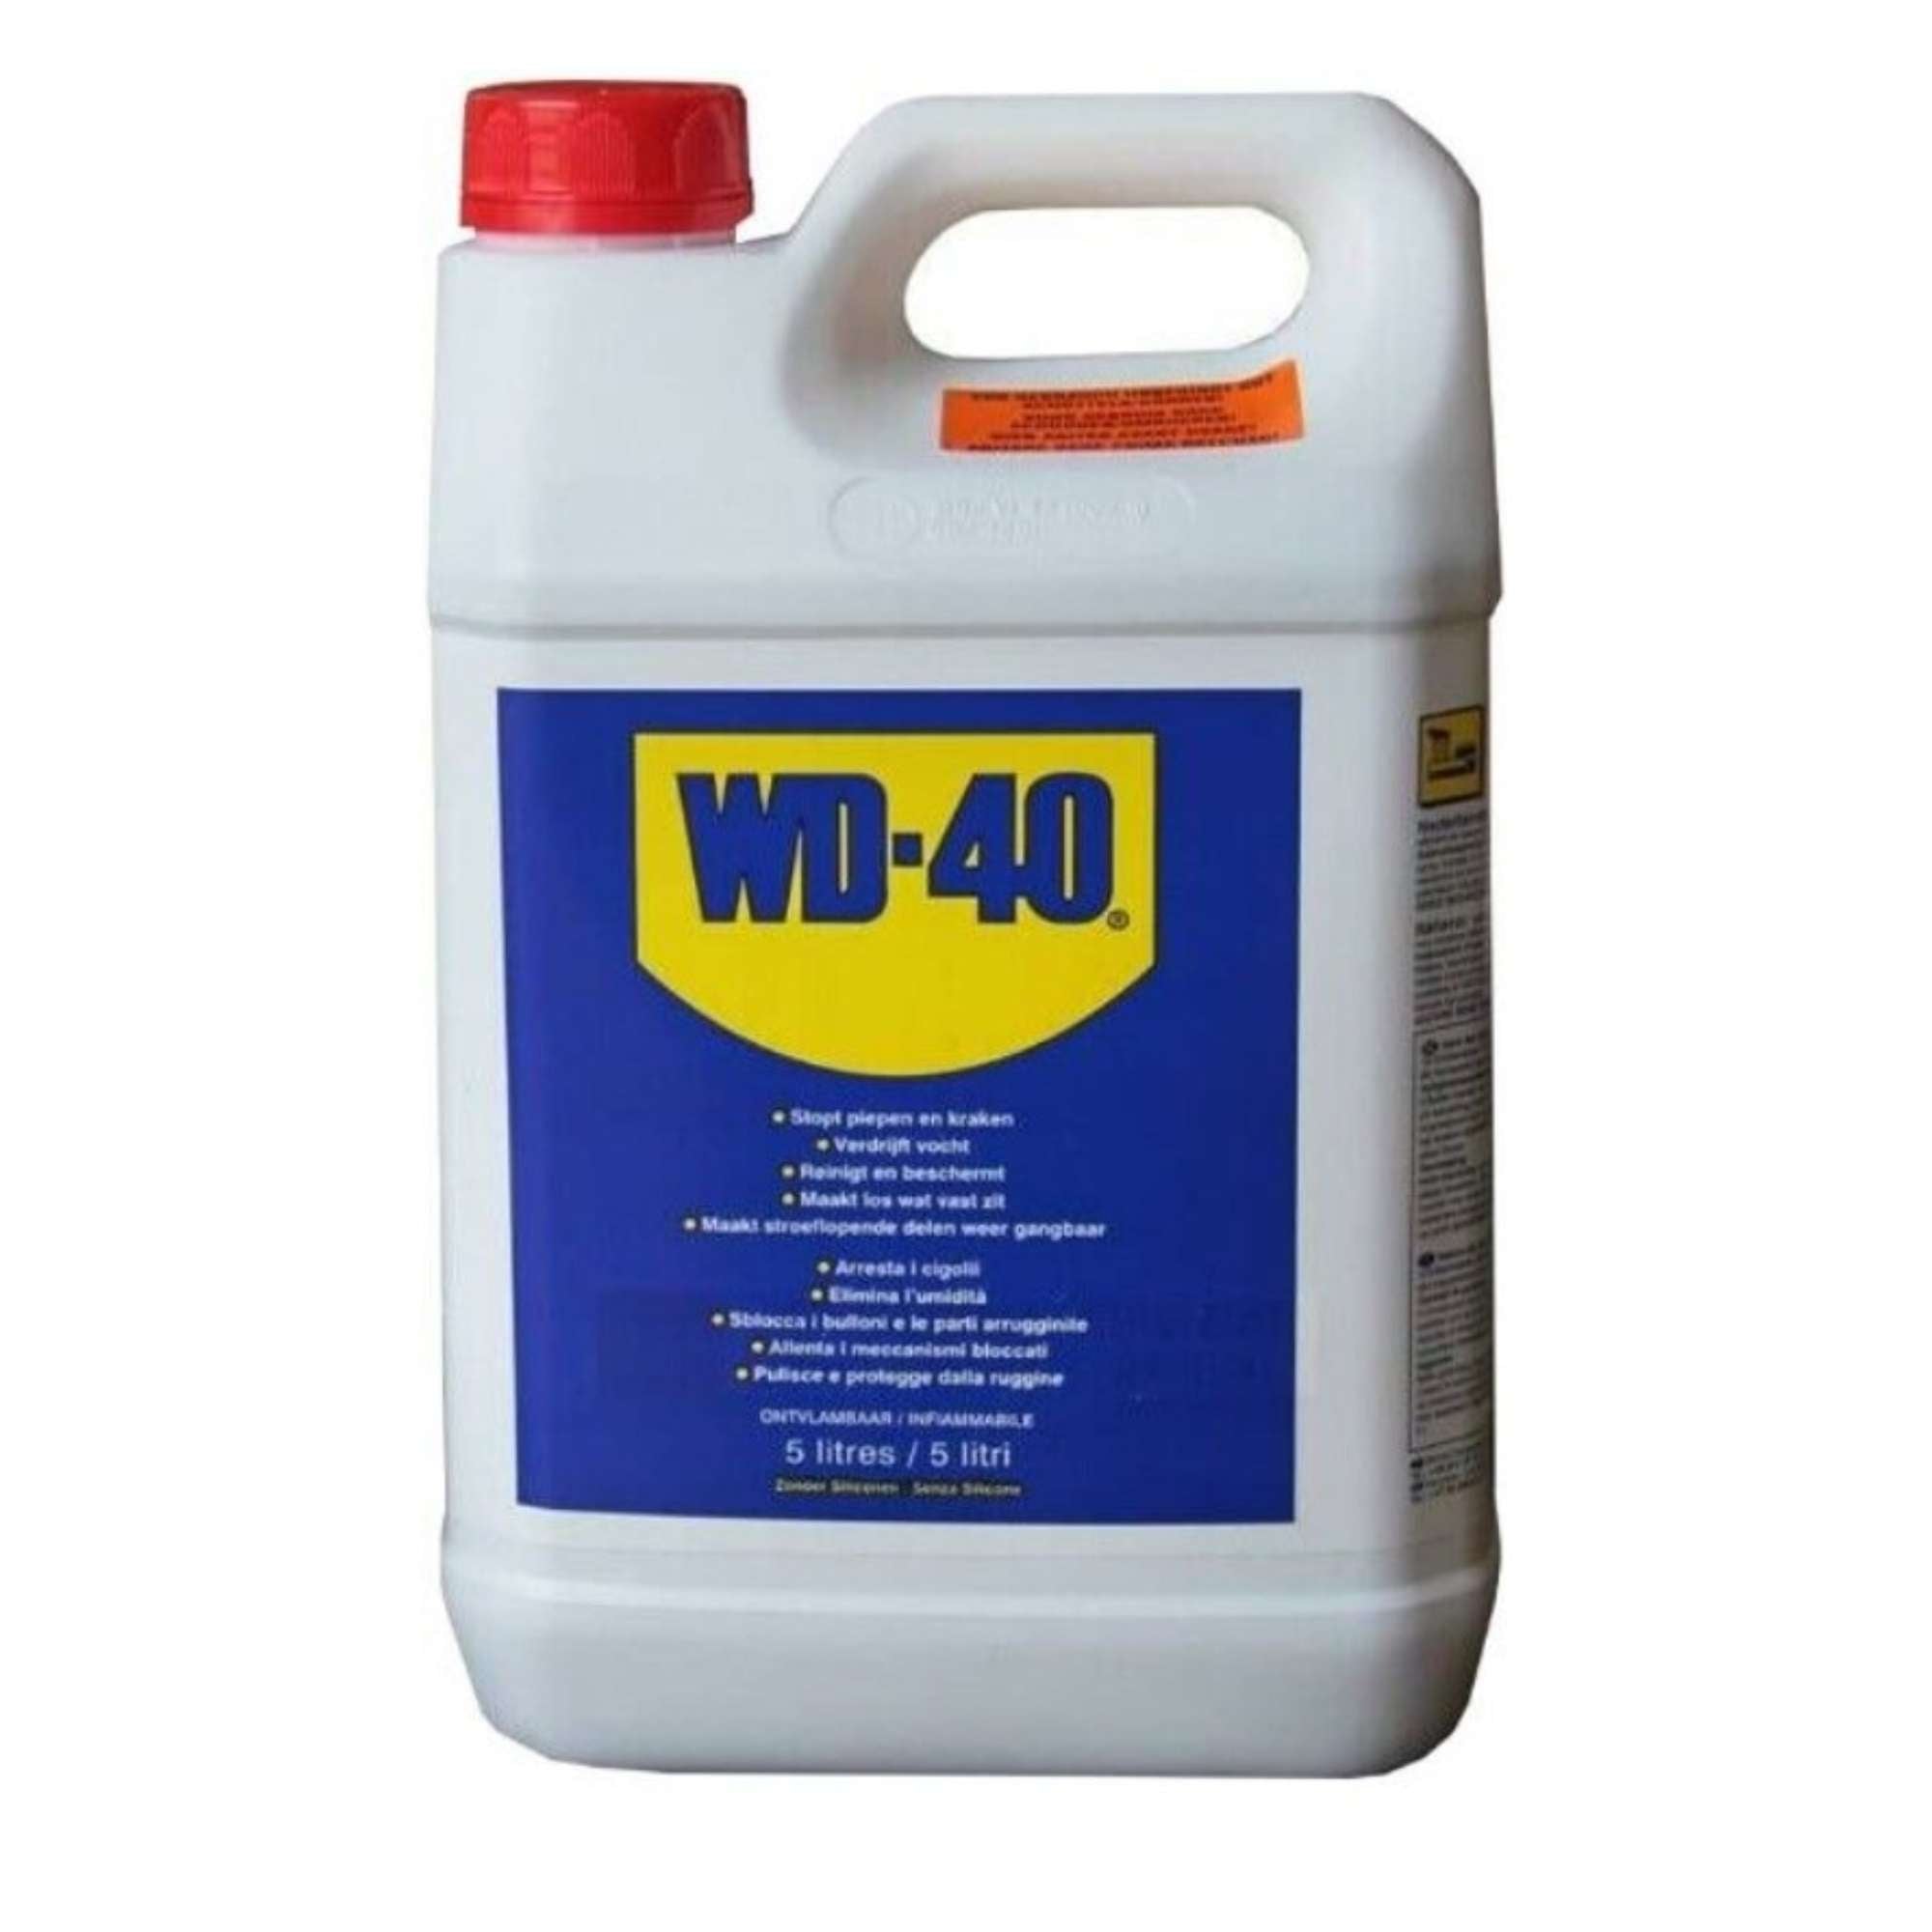 Prodotto multifunzione, sbloccante, lubrificante - WD-40